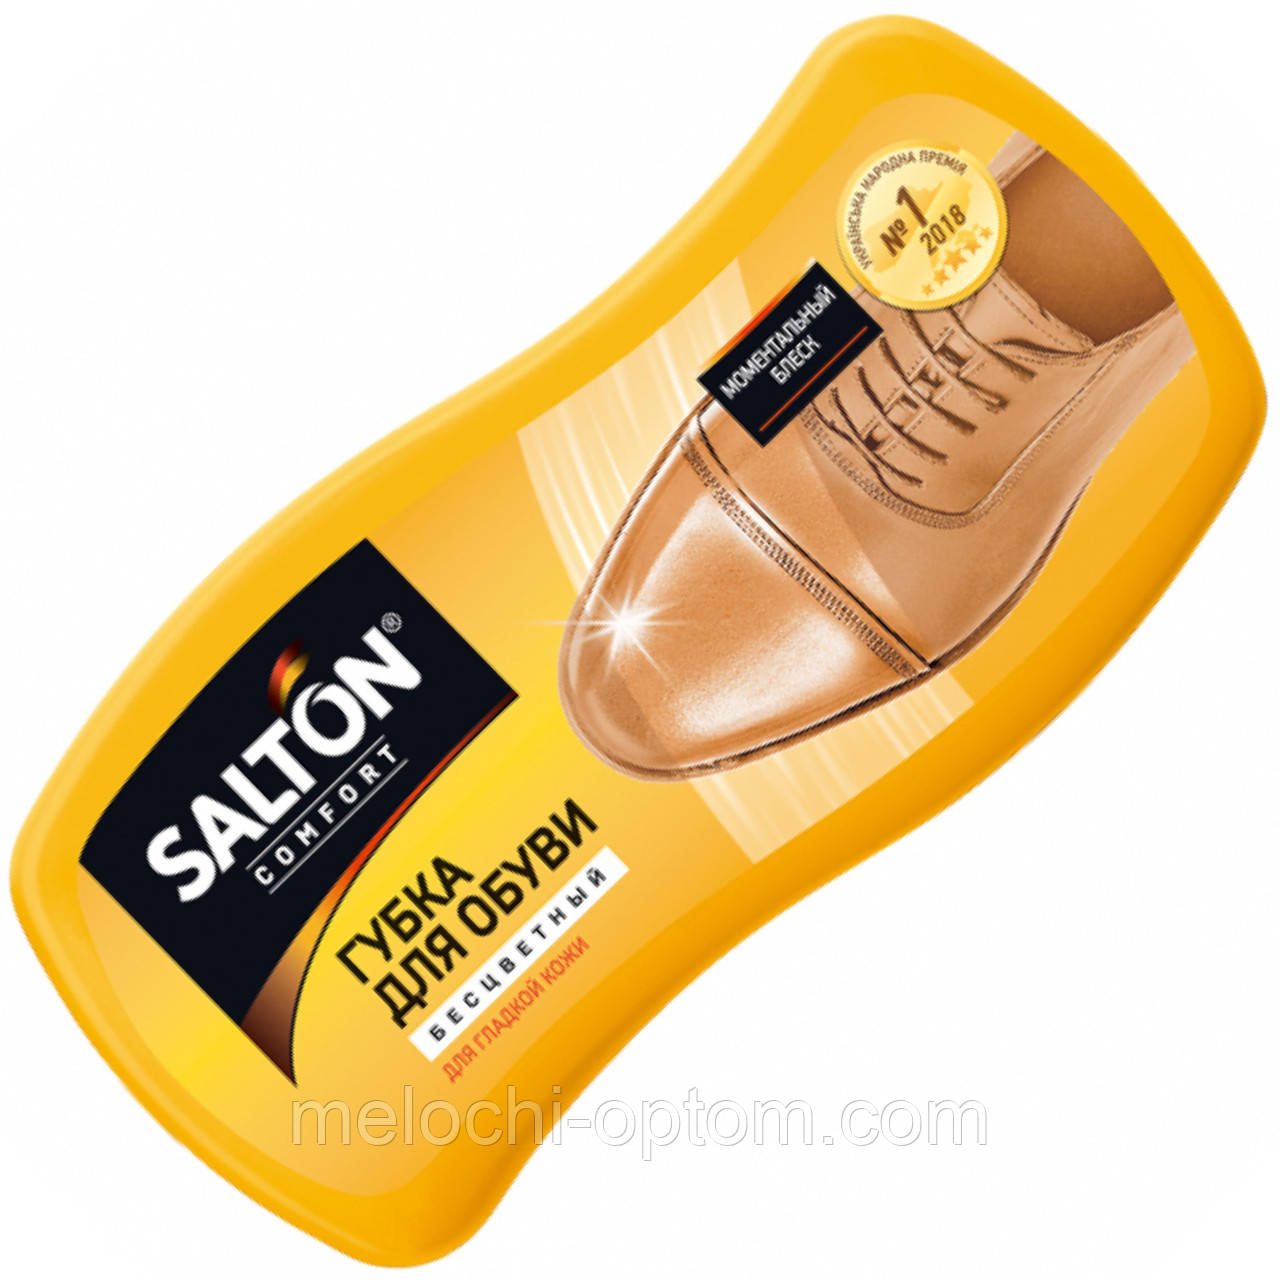  для обуви SALTON ВОЛНА гладкая кожа, бесцветная: продажа, цена в .